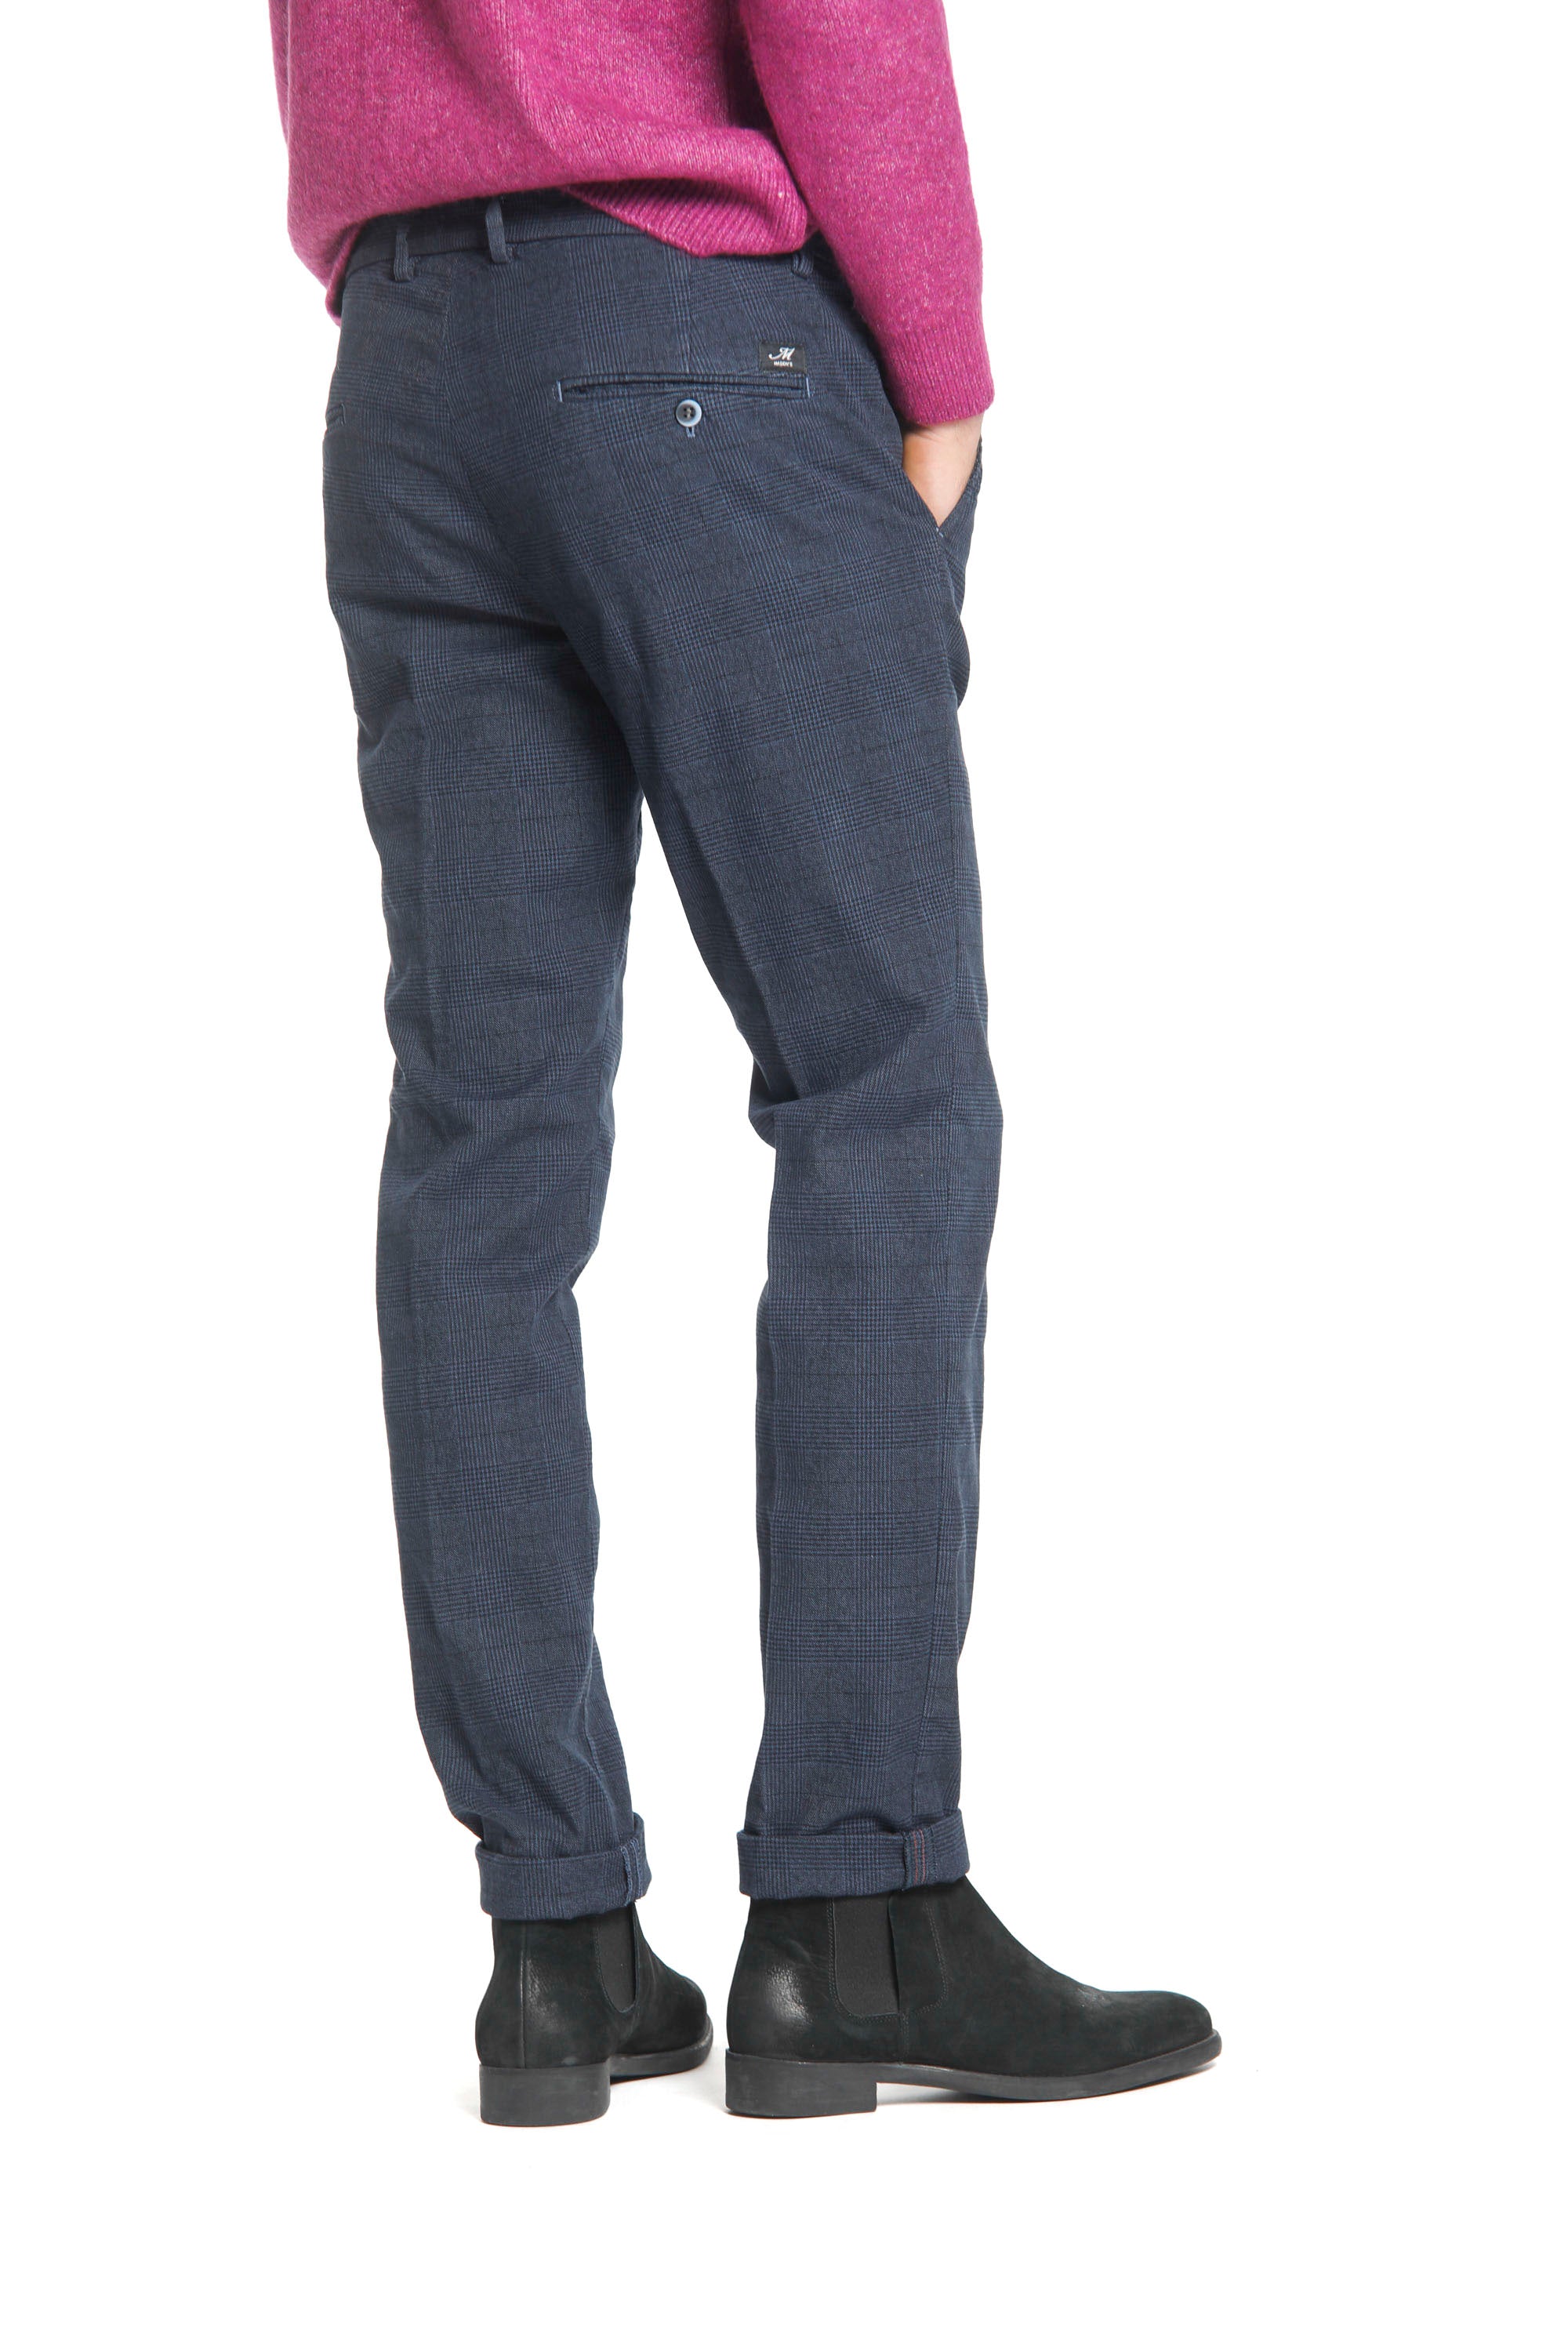 Torino Style pantalon chino homme avec motif Prince-de-Galles dégradé mouliné coupe slim